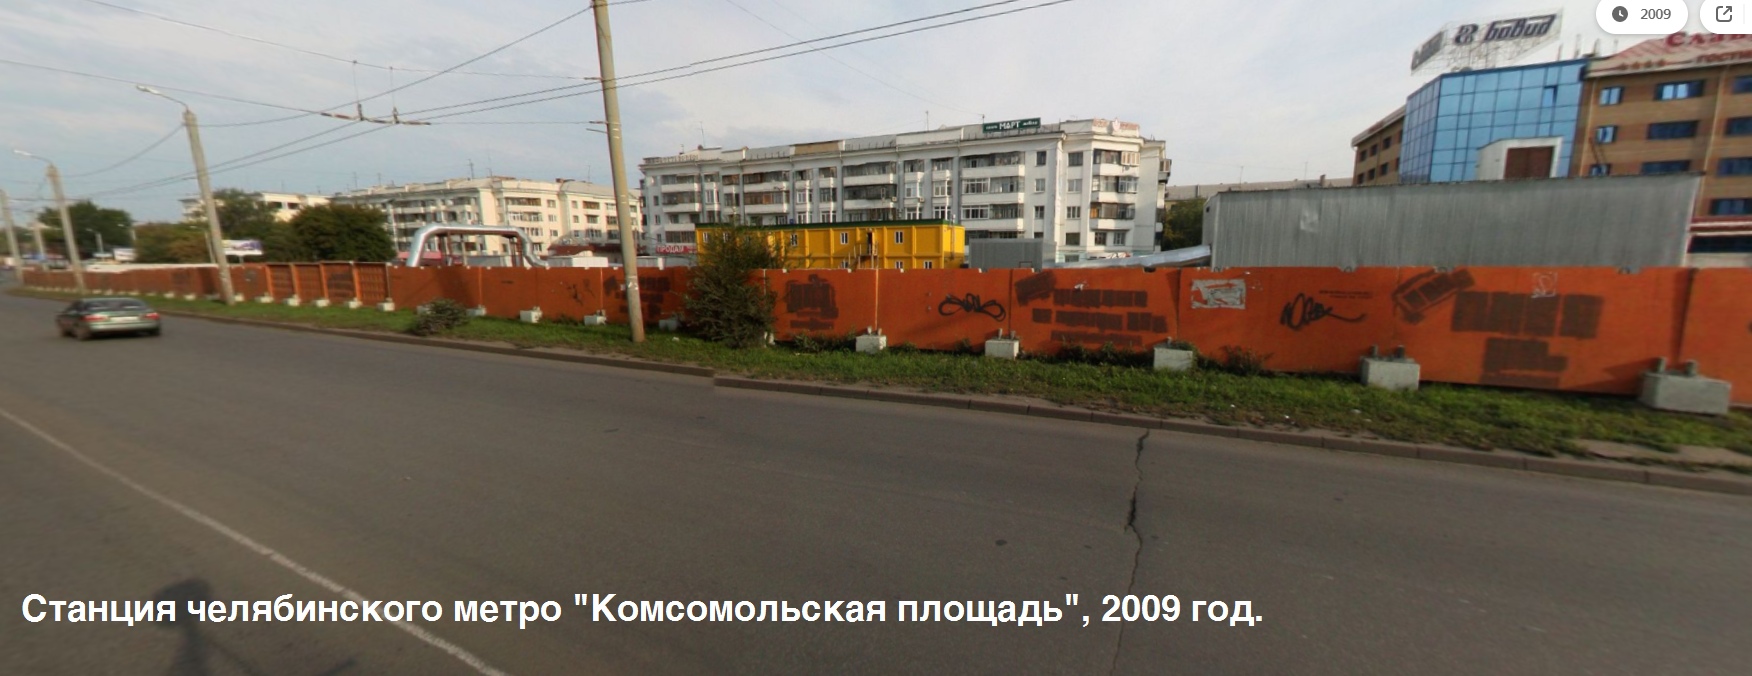 Единственная станция метро в Челябинске: хроника деградации в фотографиях за 10 лет